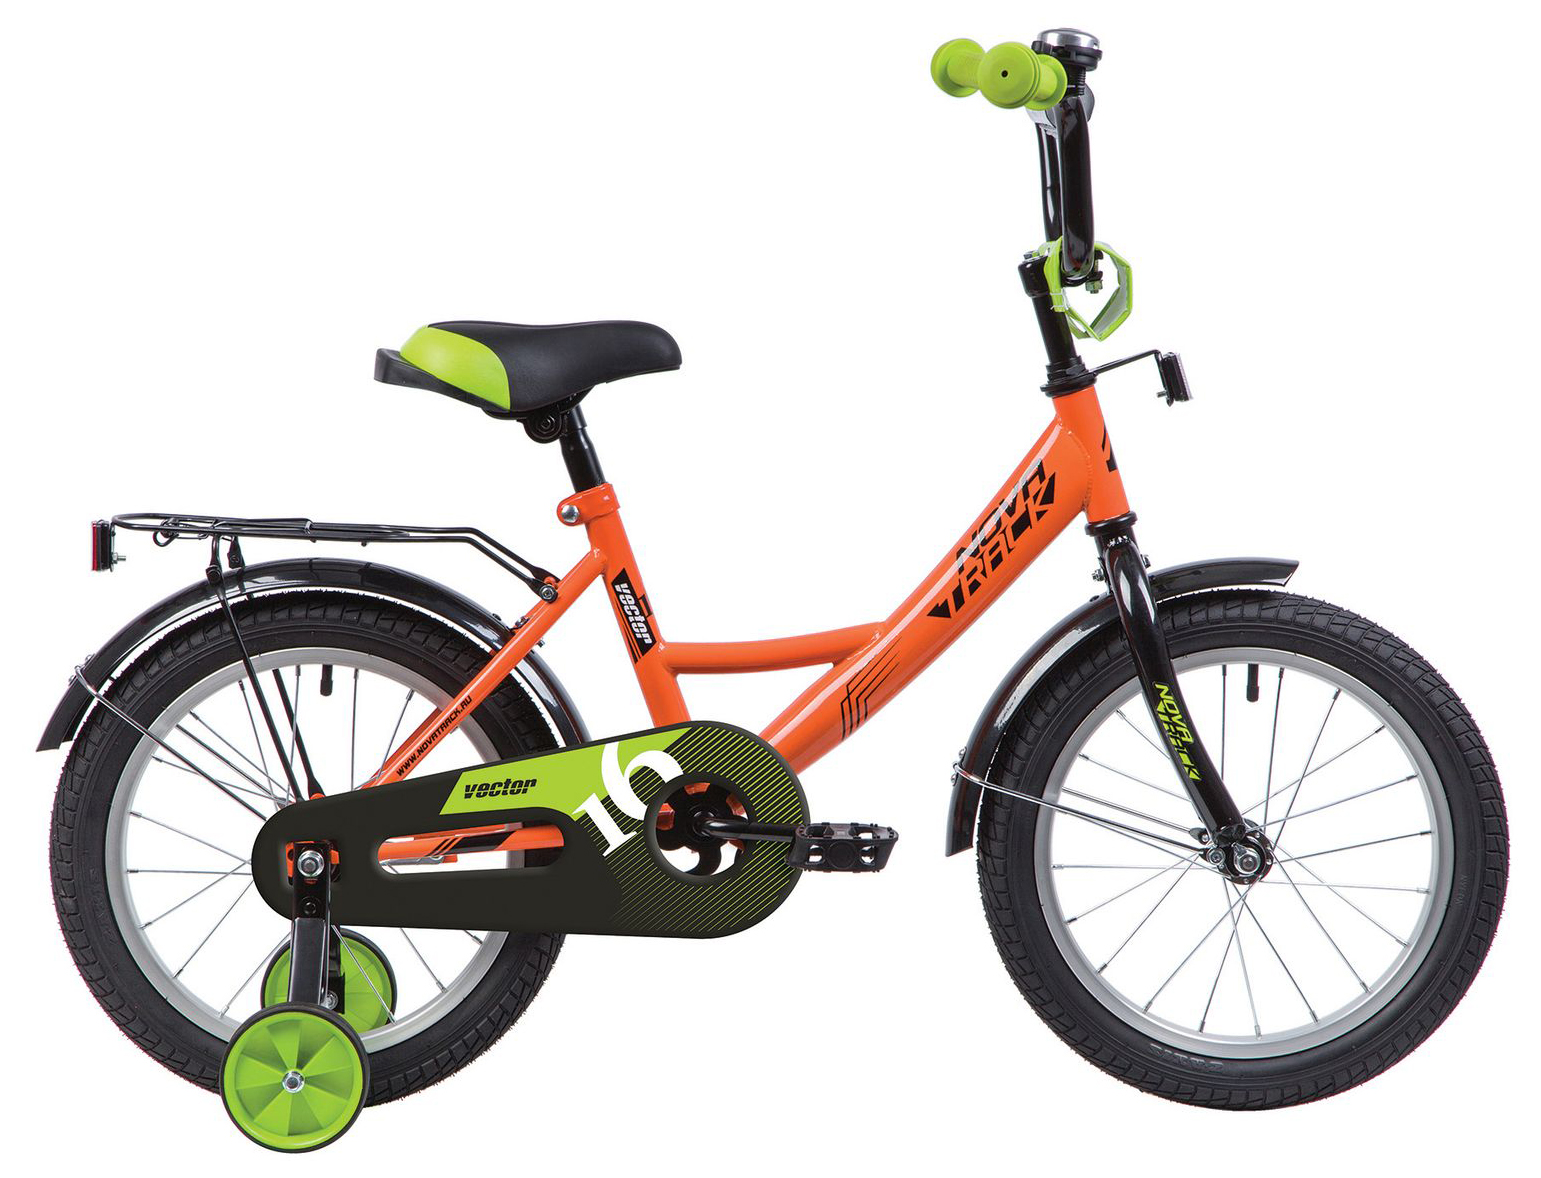  Отзывы о Детском велосипеде Novatrack Vector 16 2022